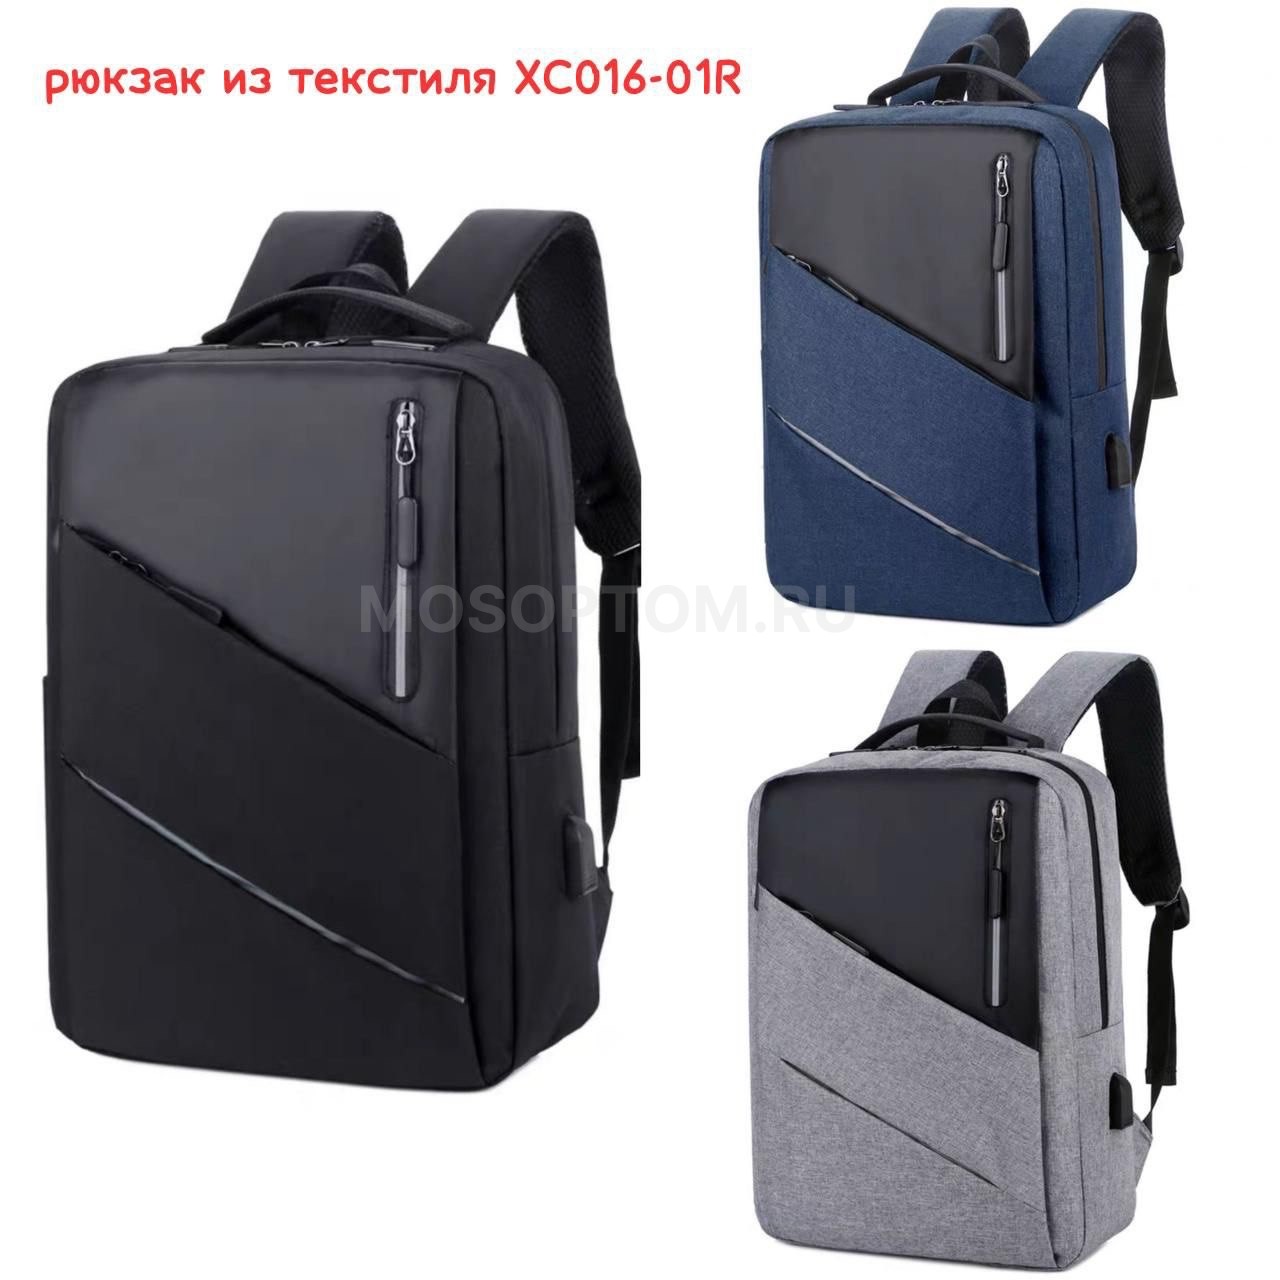 Рюкзак городской с отсеком для ноутбука и USB XC016-01R оптом